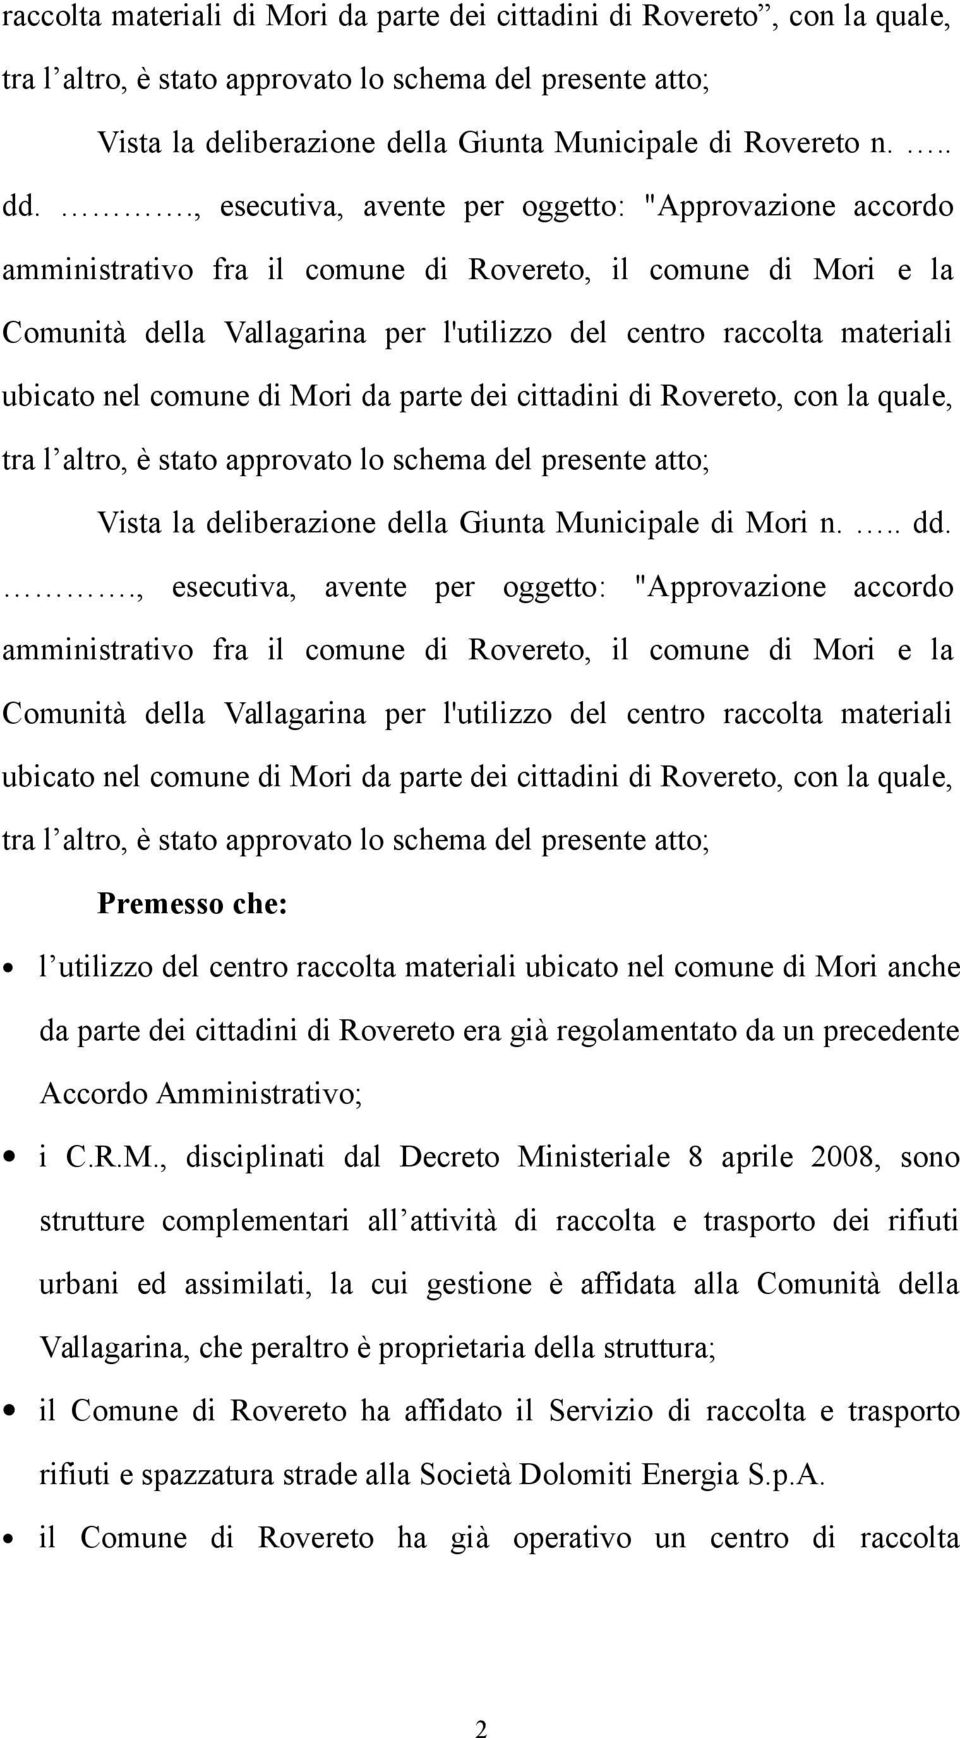 ., esecutiva, avente per oggetto: "Approvazione accordo amministrativo fra il comune di Rovereto, il comune di Mori e la Comunità della Vallagarina per l'utilizzo del centro raccolta materiali